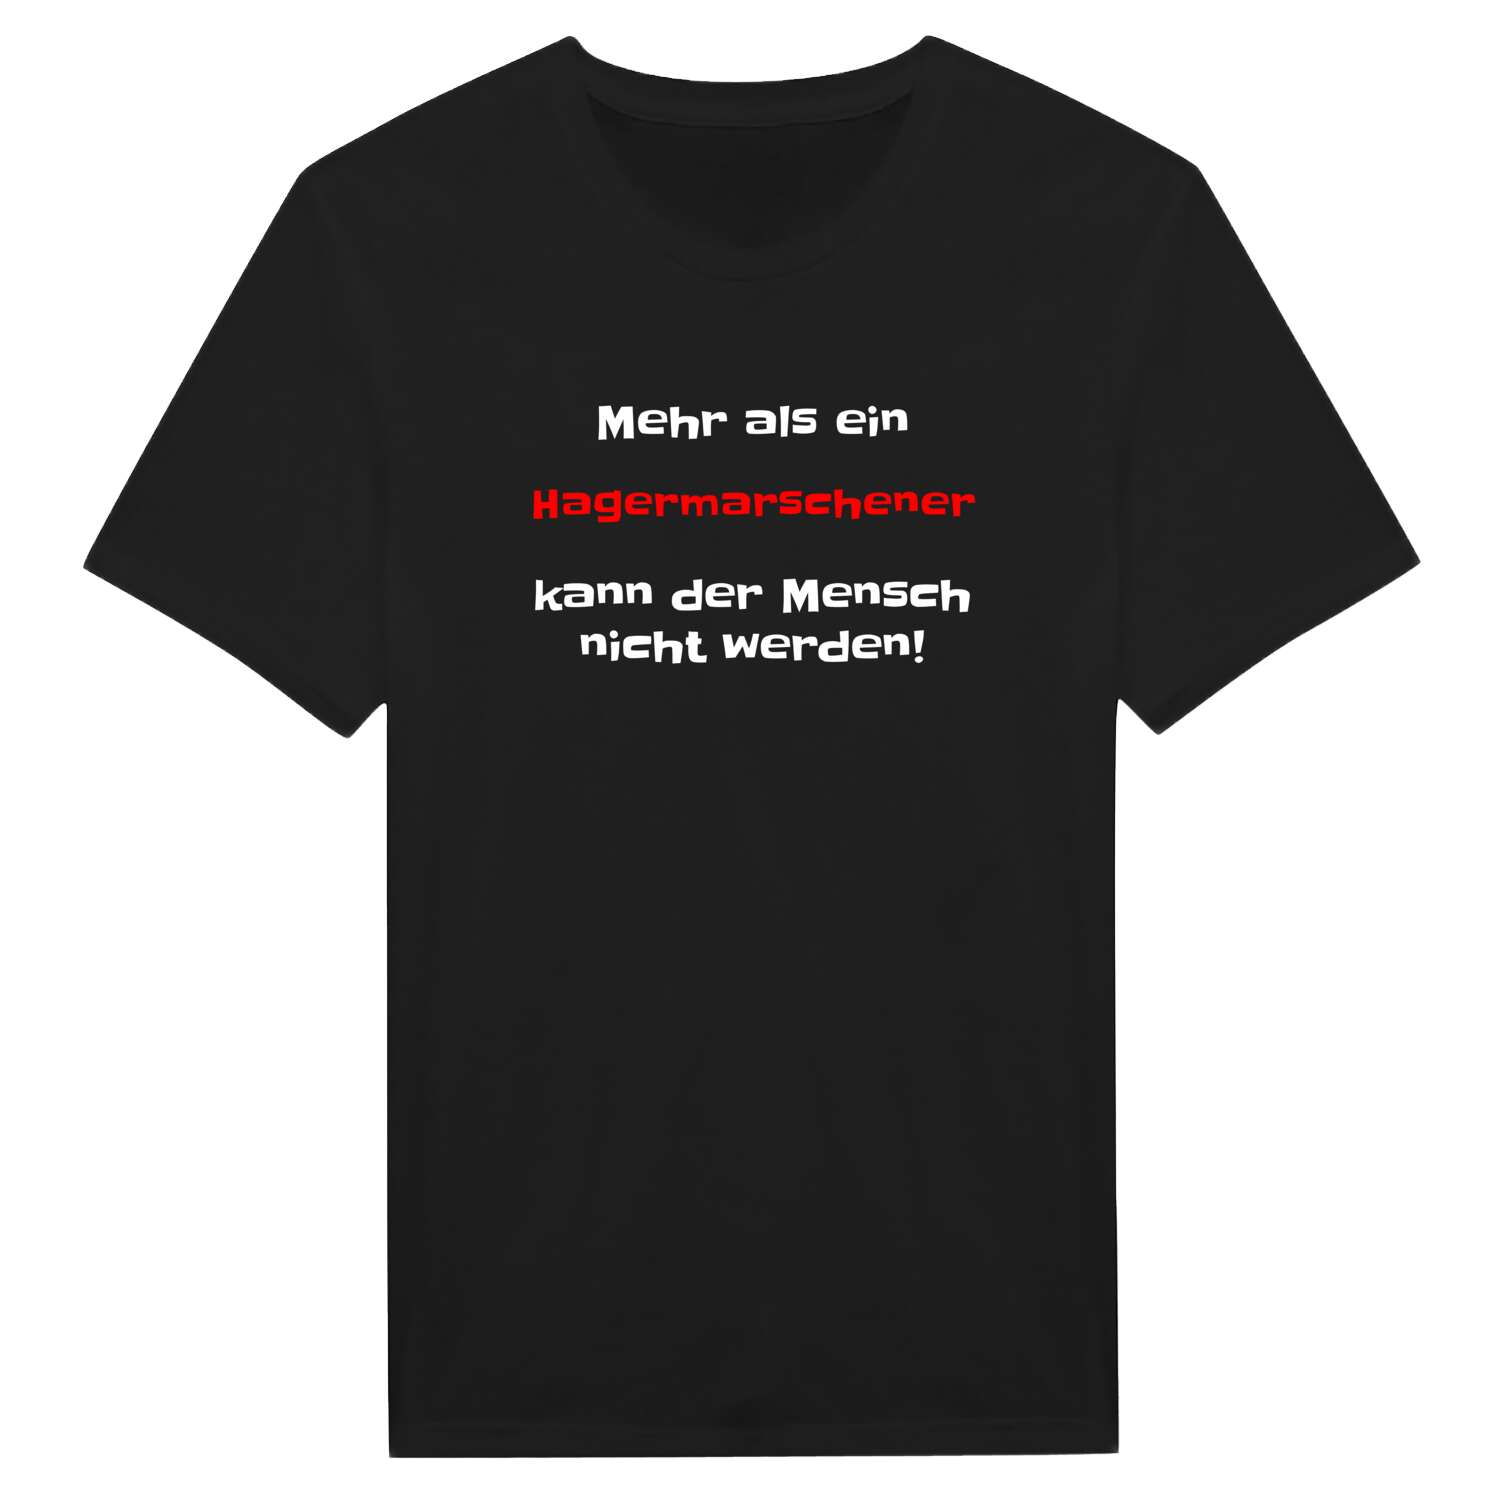 Hagermarsch T-Shirt »Mehr als ein«